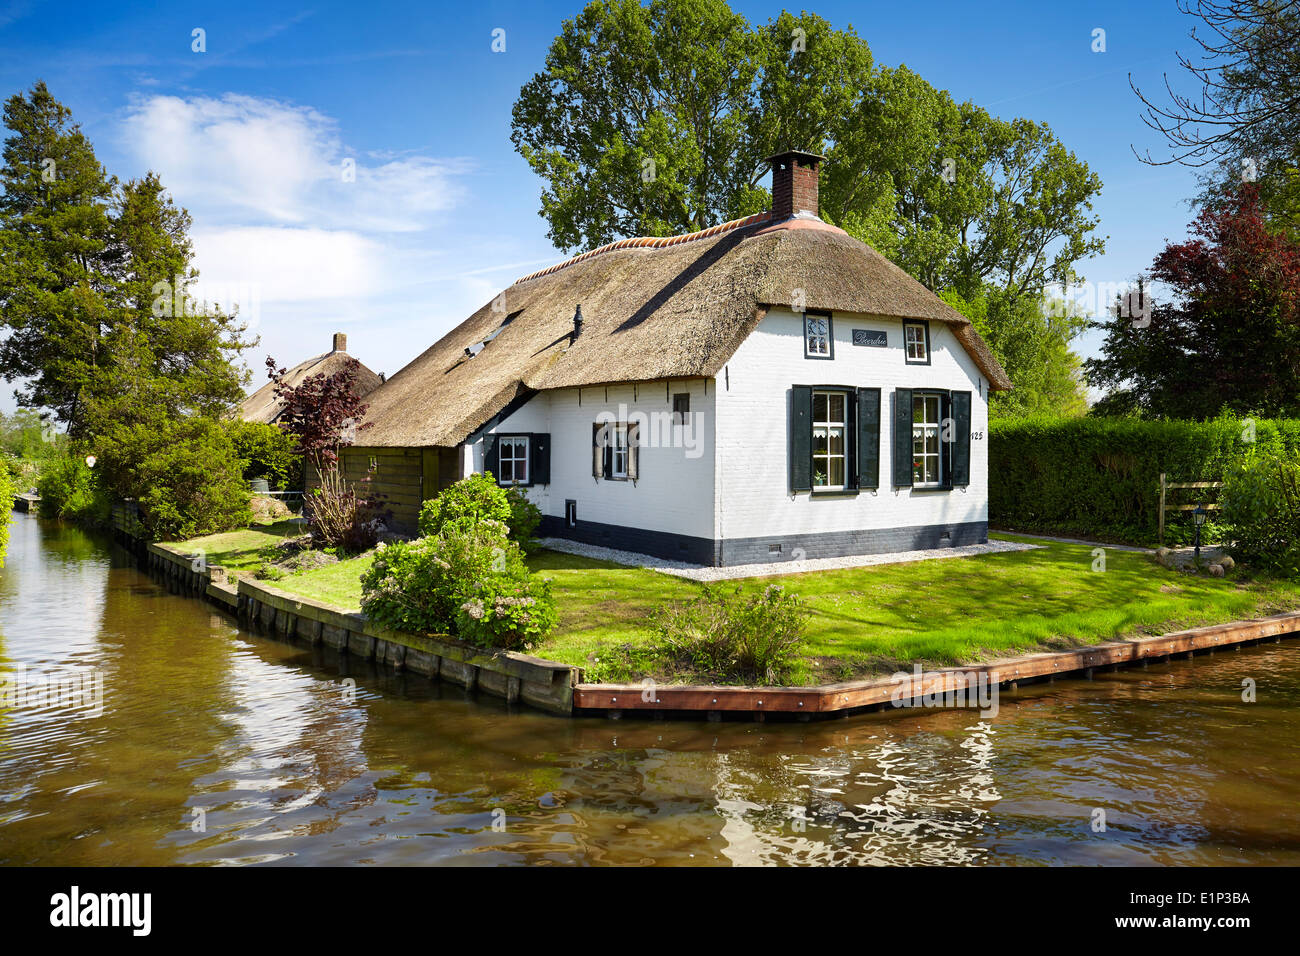 Les canaux de Giethoorn village - Hollande Pays-Bas Banque D'Images